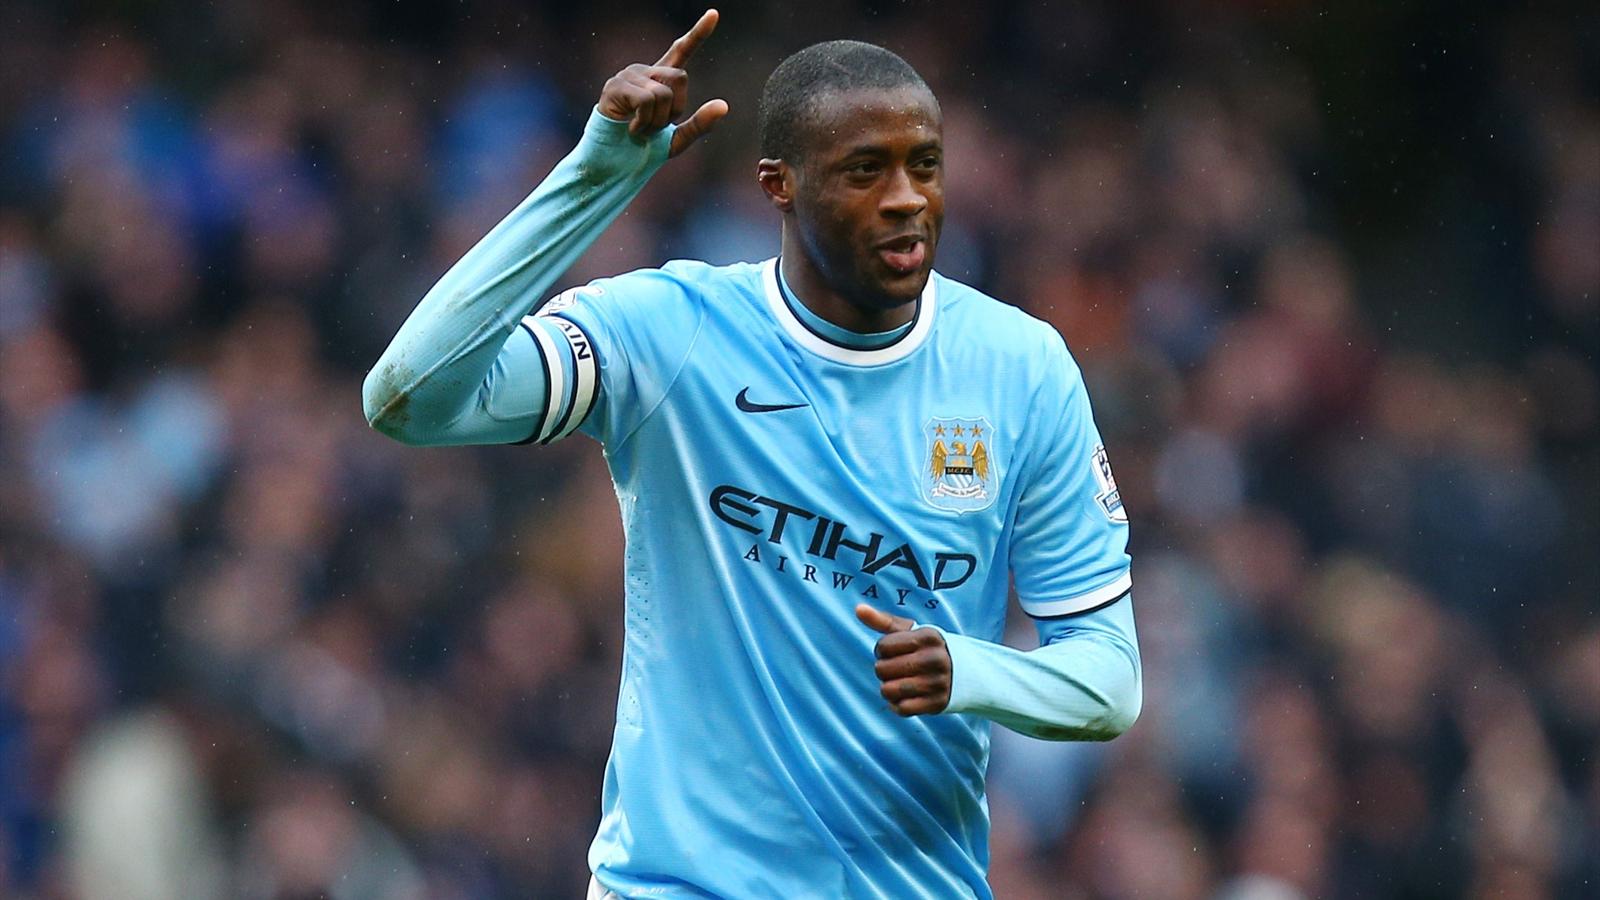 Maintenant, Yaya Touré veut rester à Manchester City "aussi longtemps que possible"...